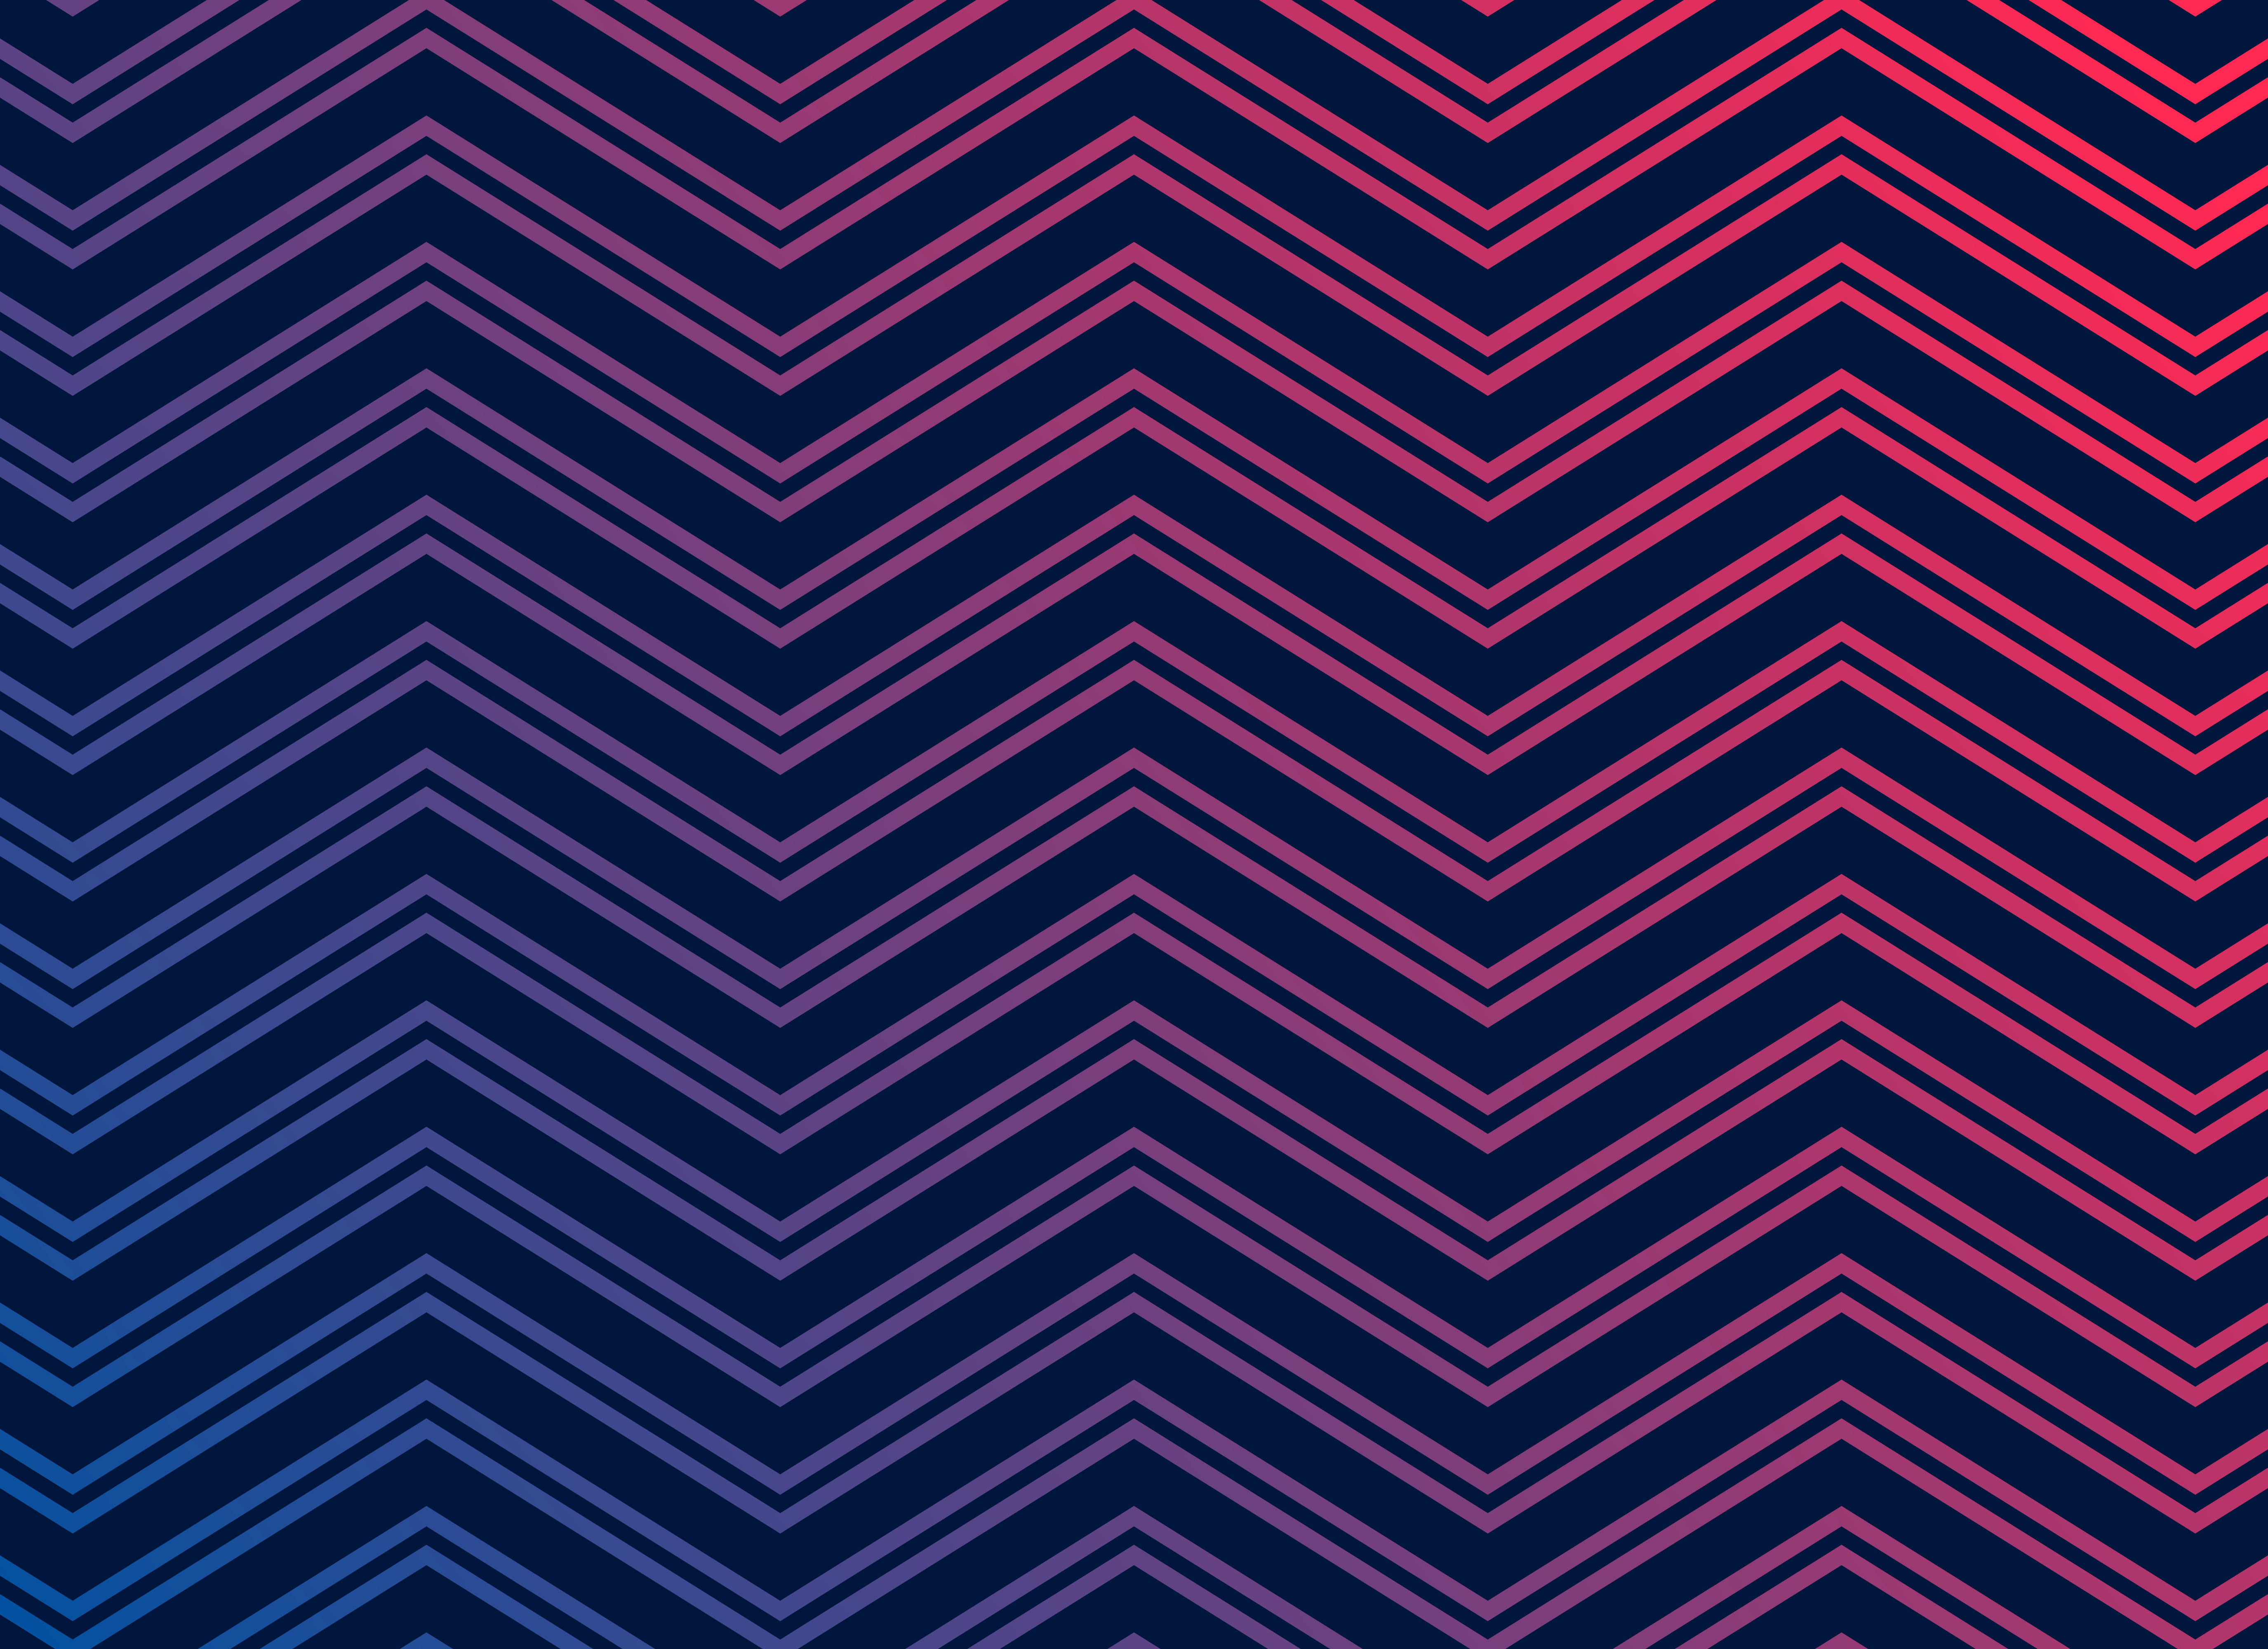 Vivid zigzag pattern powerpoint background